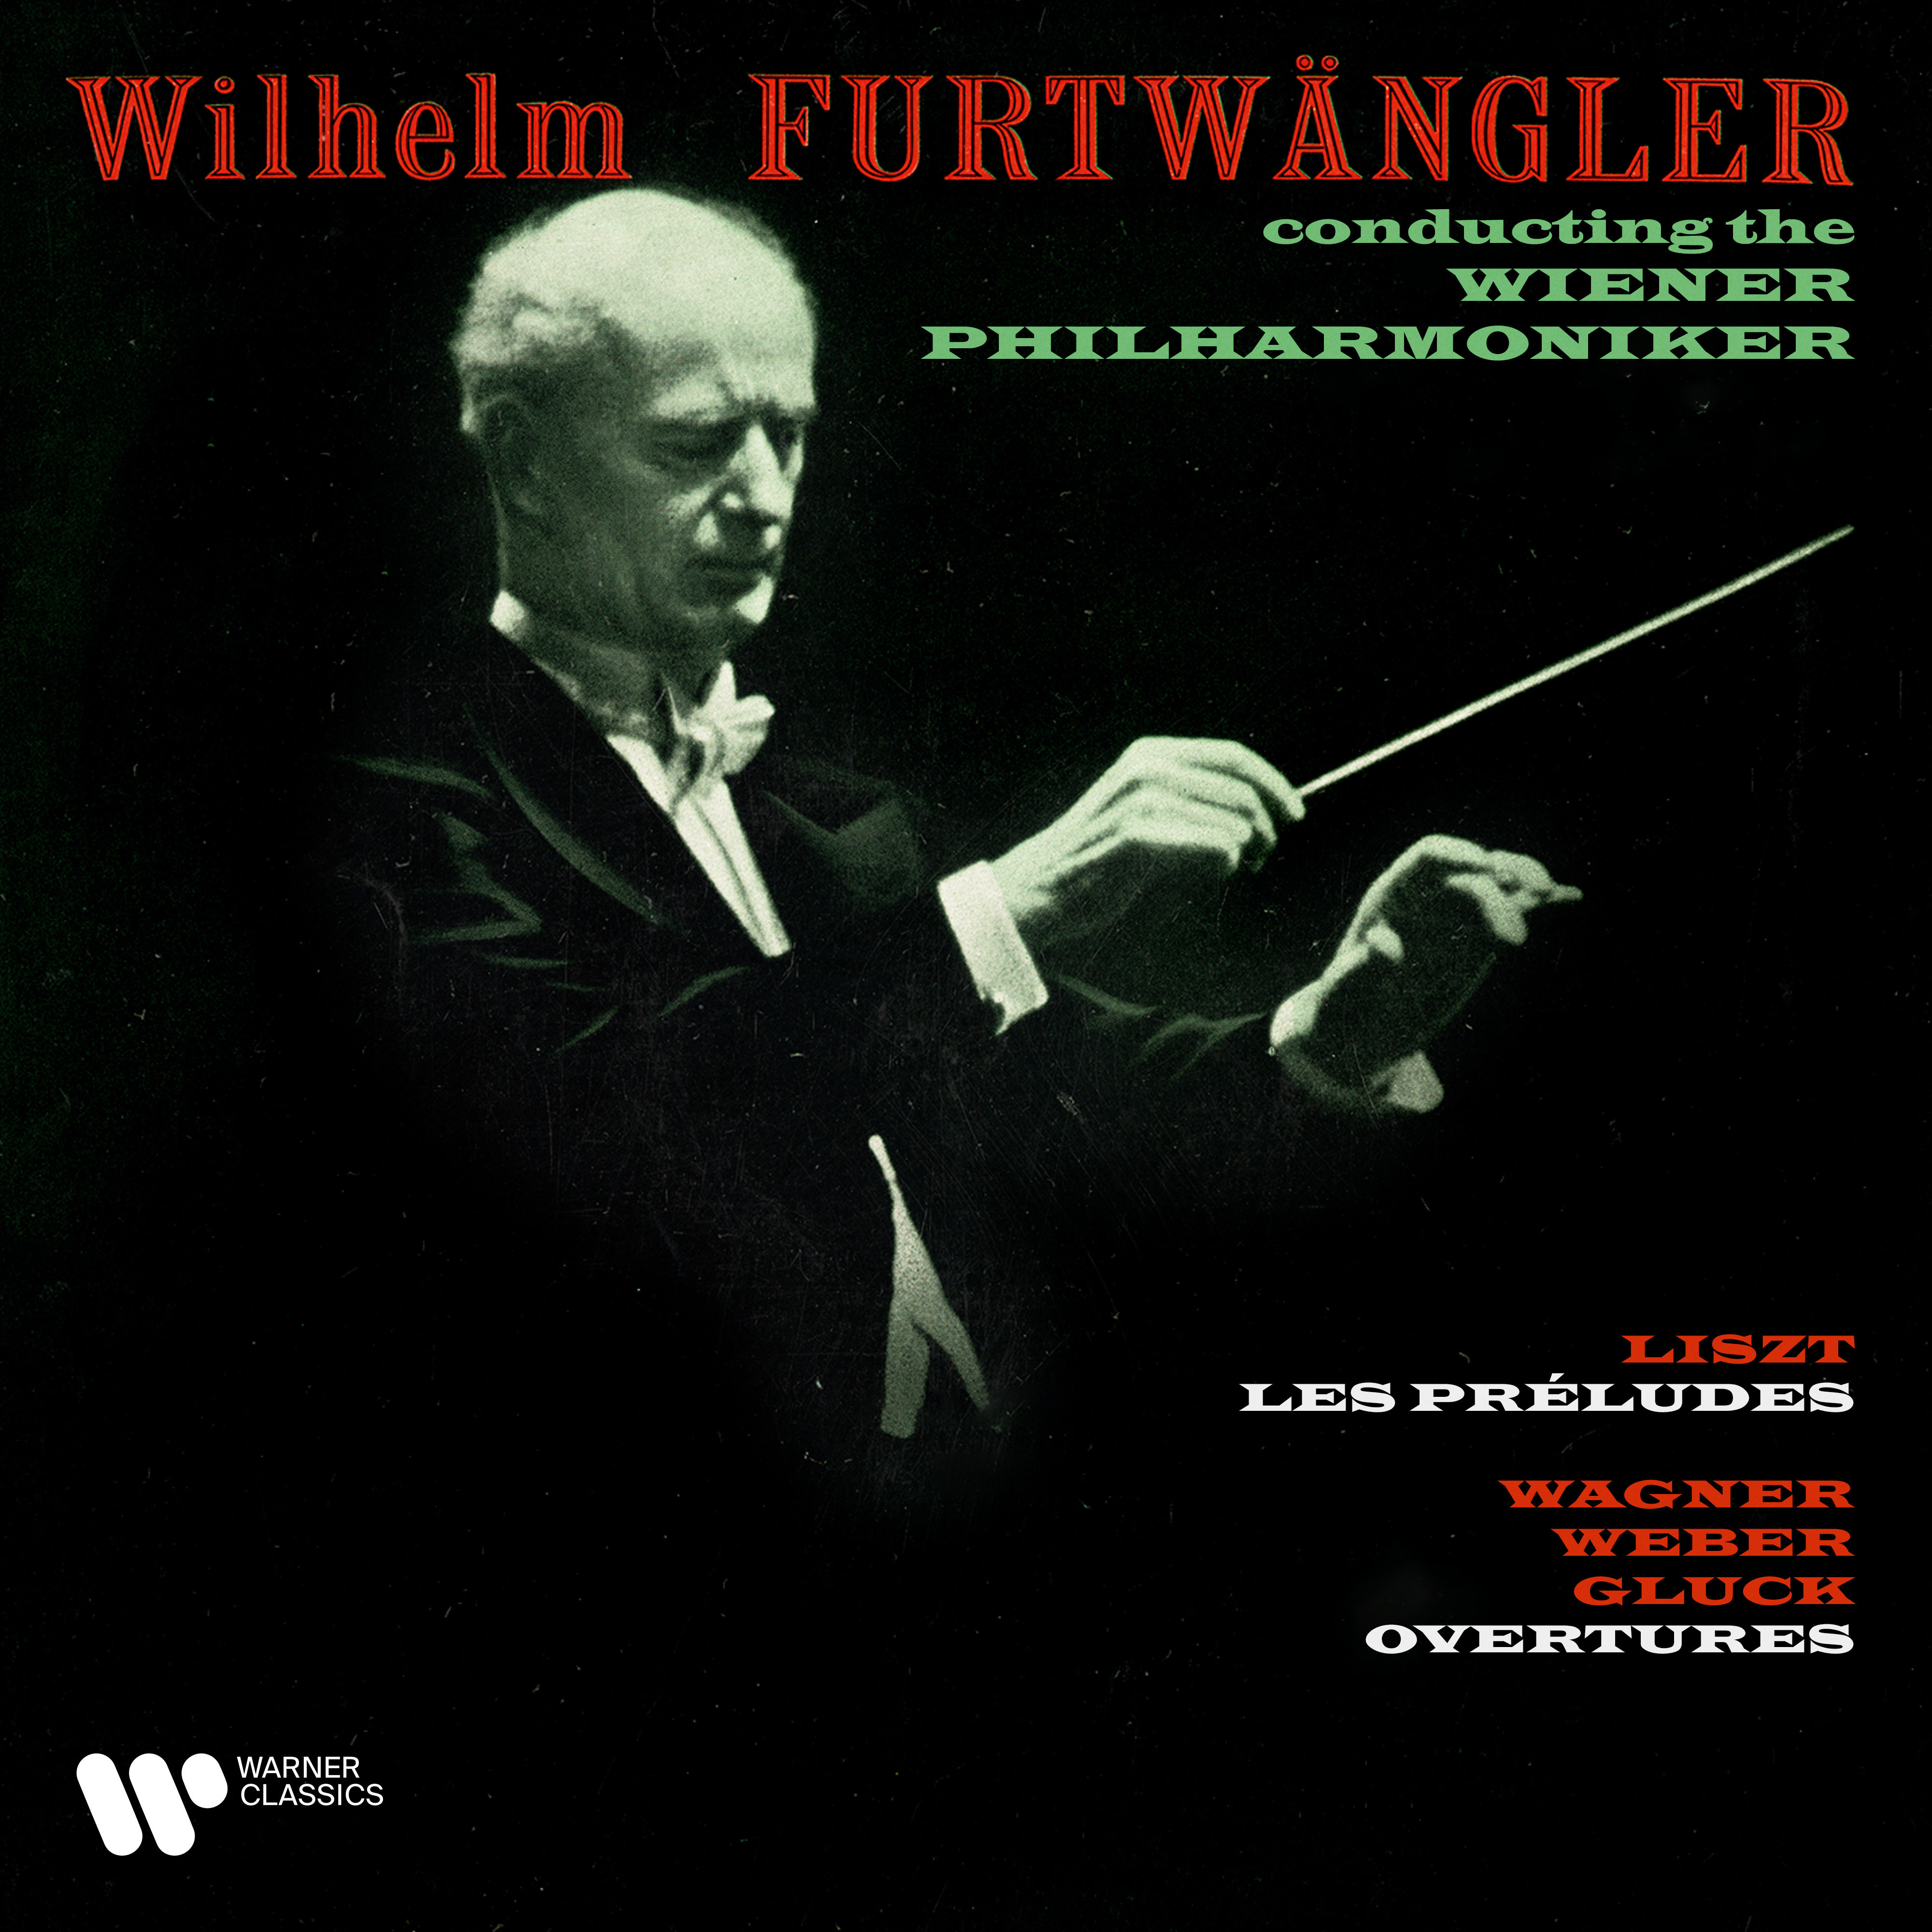 Liszt- Les préludes – Wagner, Weber & Gluck- Overtures